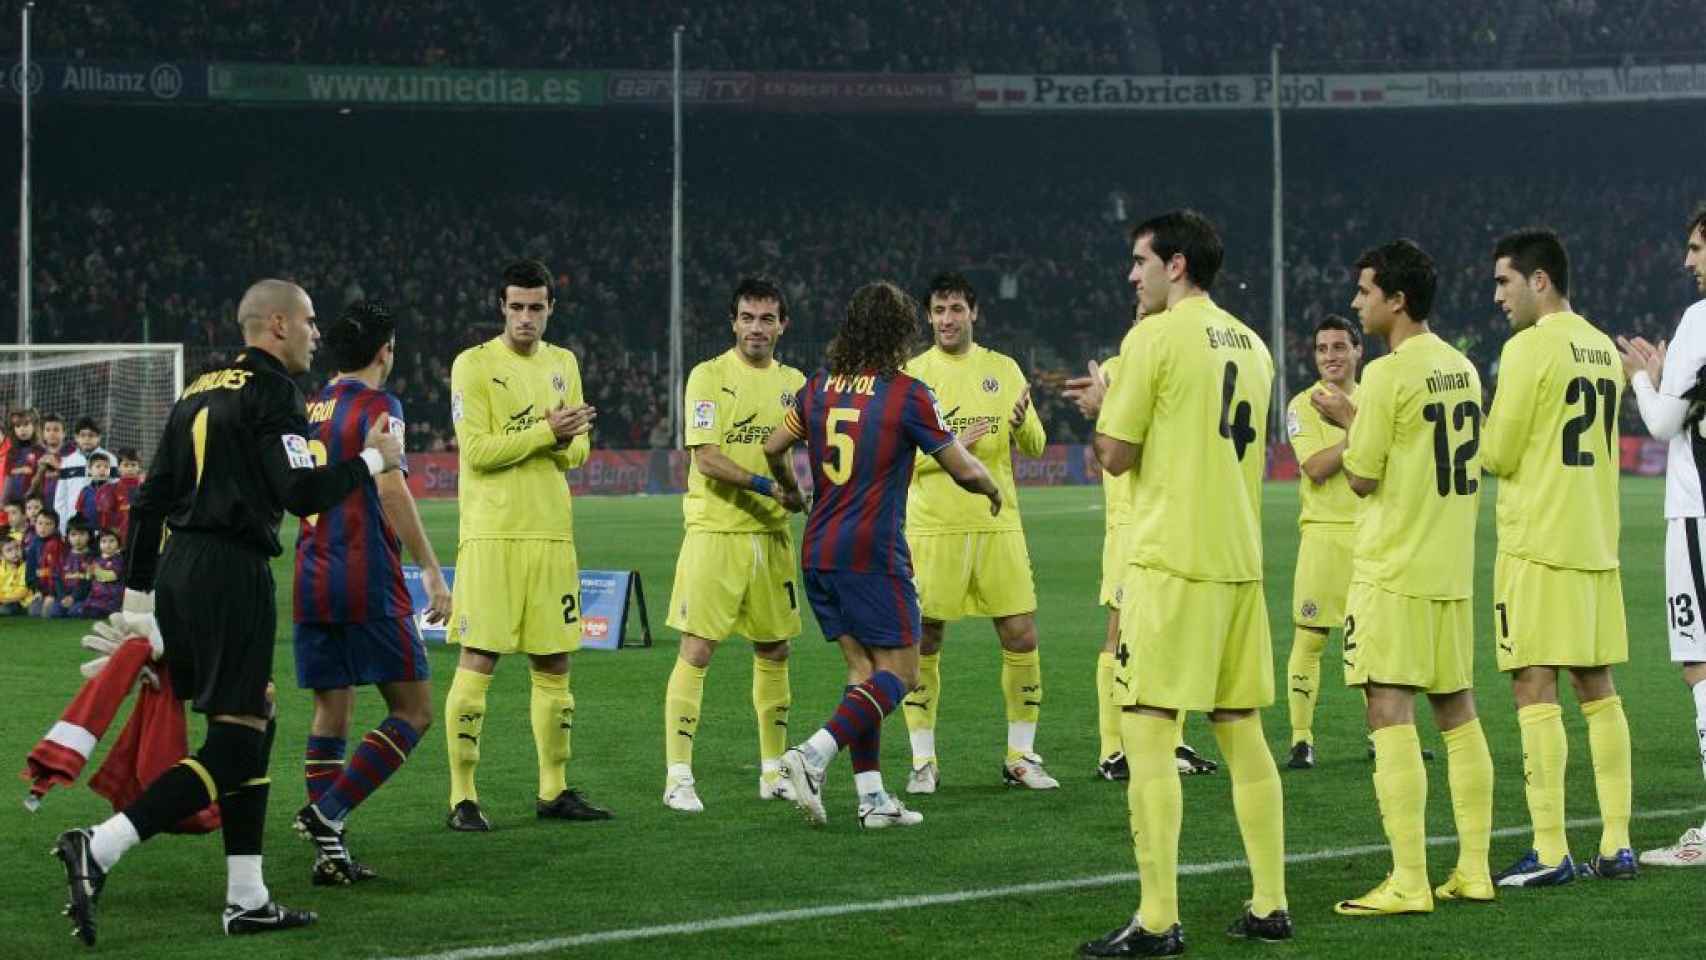 El Villarreal hizo al pasillo al Barcelona en 2009 tras ganar los culés el Mundial de Clubes.